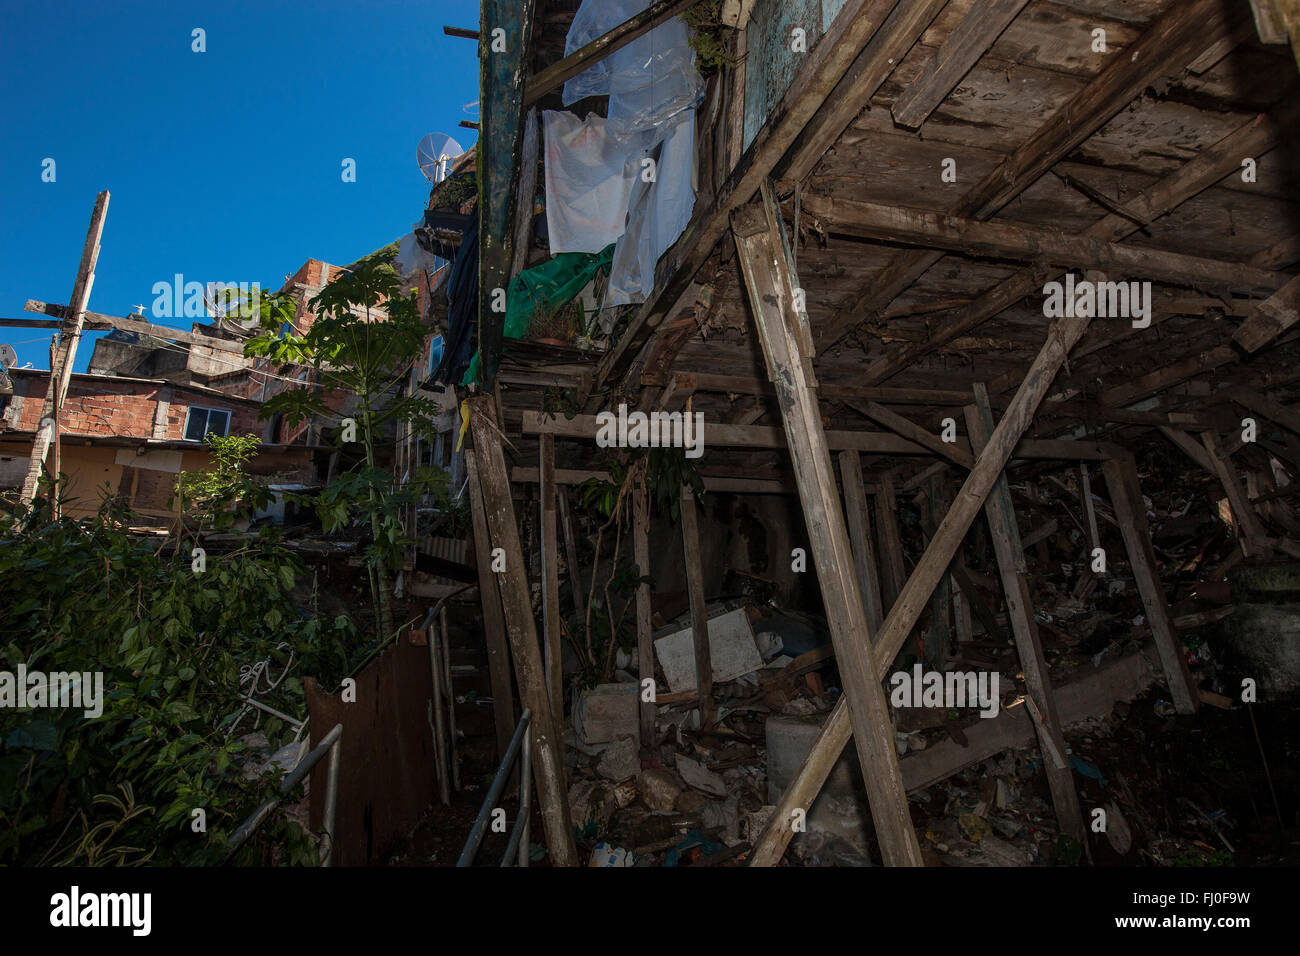 Precaria in legno palafitta in favela di Santa Marta, Rio de Janeiro, Brasile - Cristo Redentore statua in background. Foto Stock